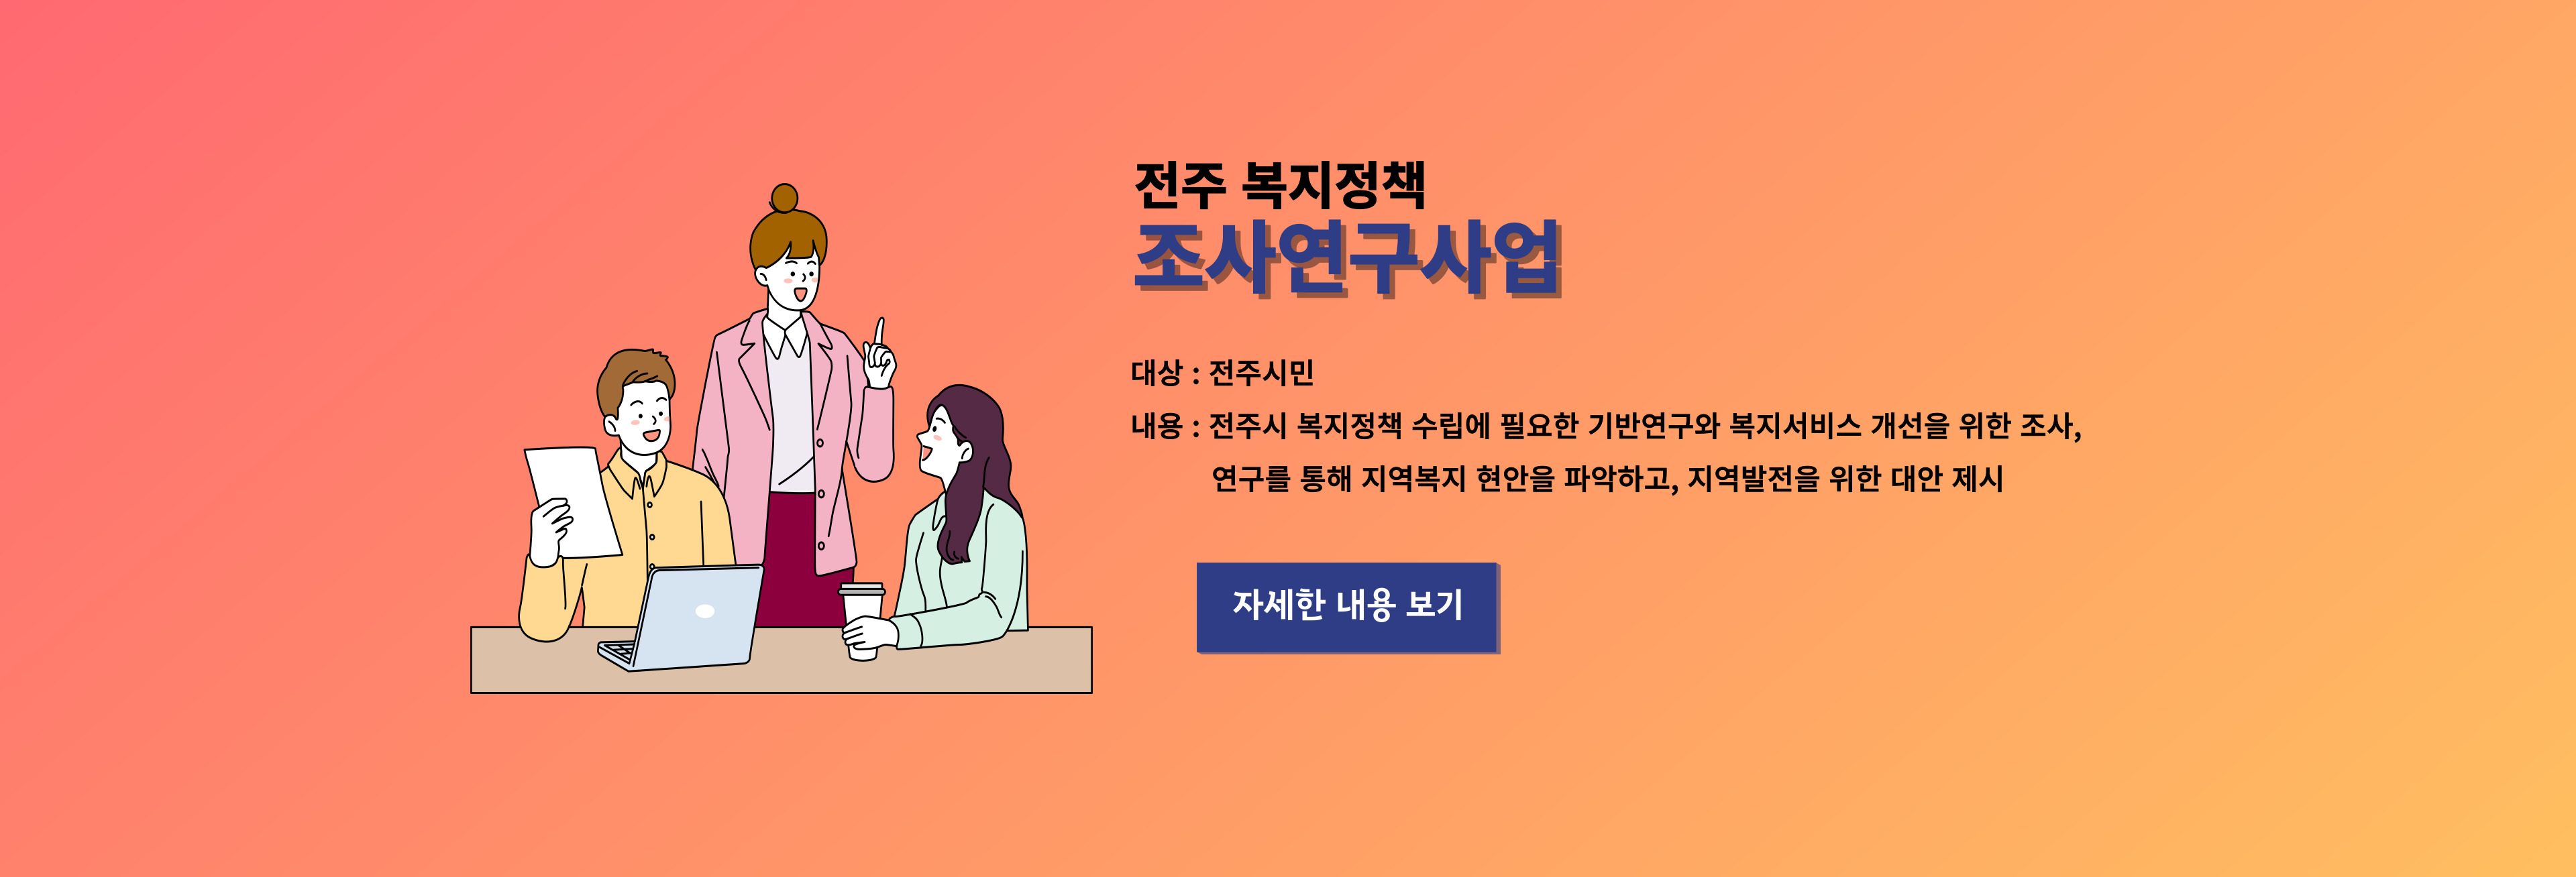 전북 복지정책 조사연구사업